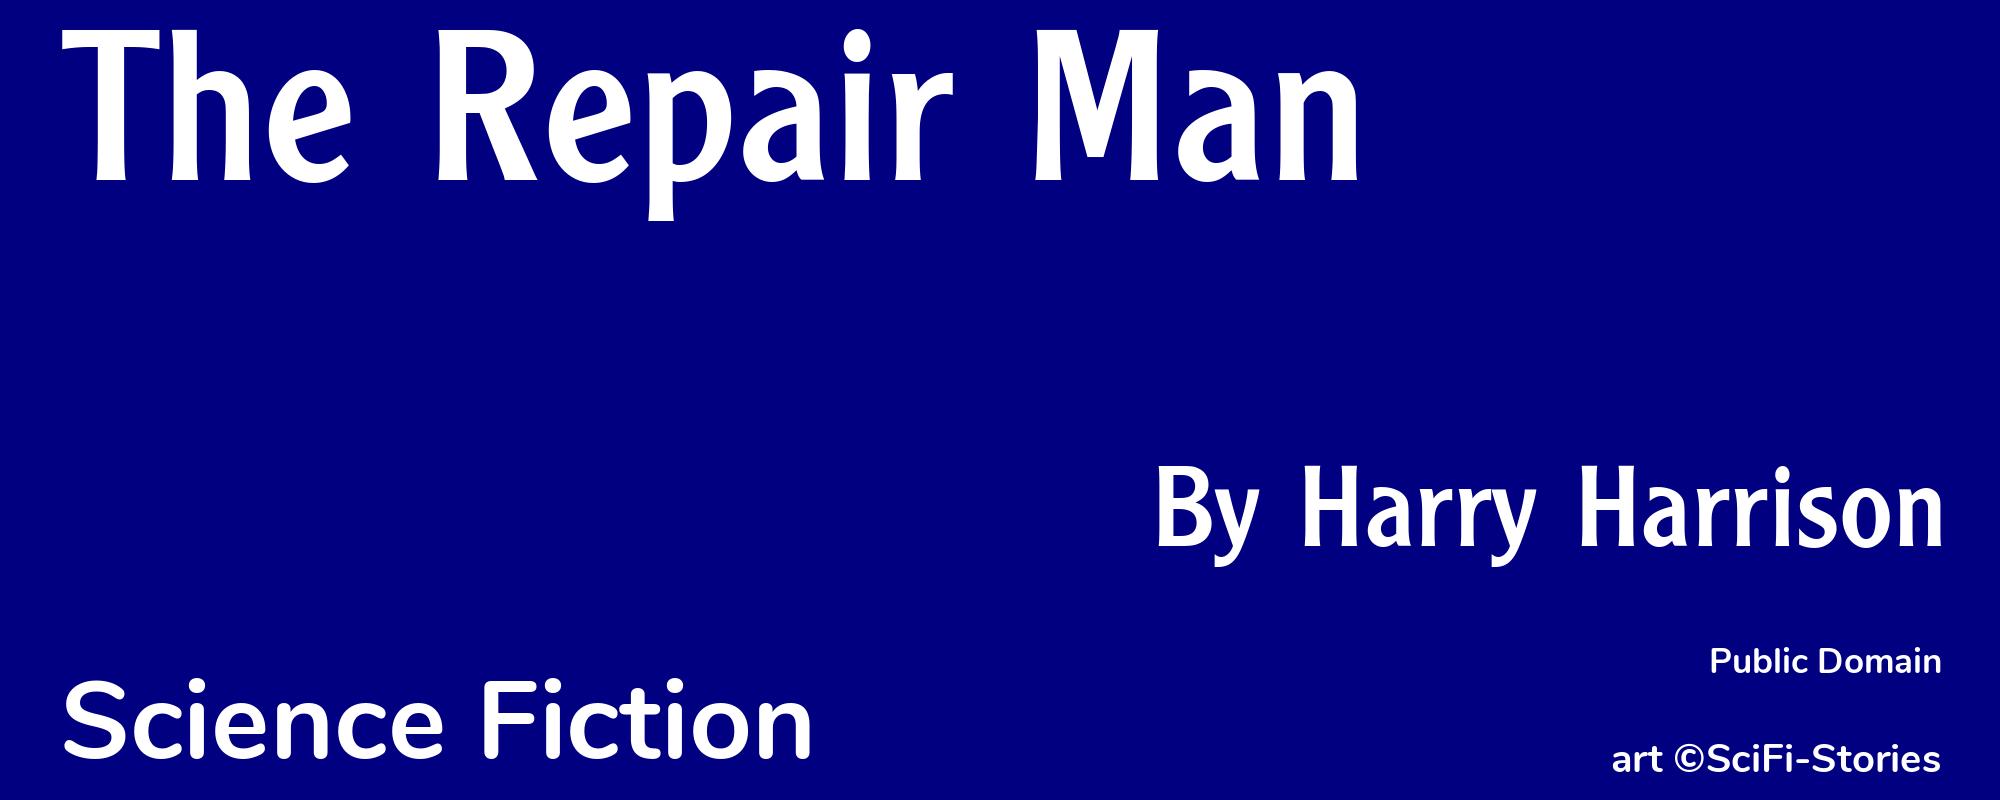 The Repair Man - Cover